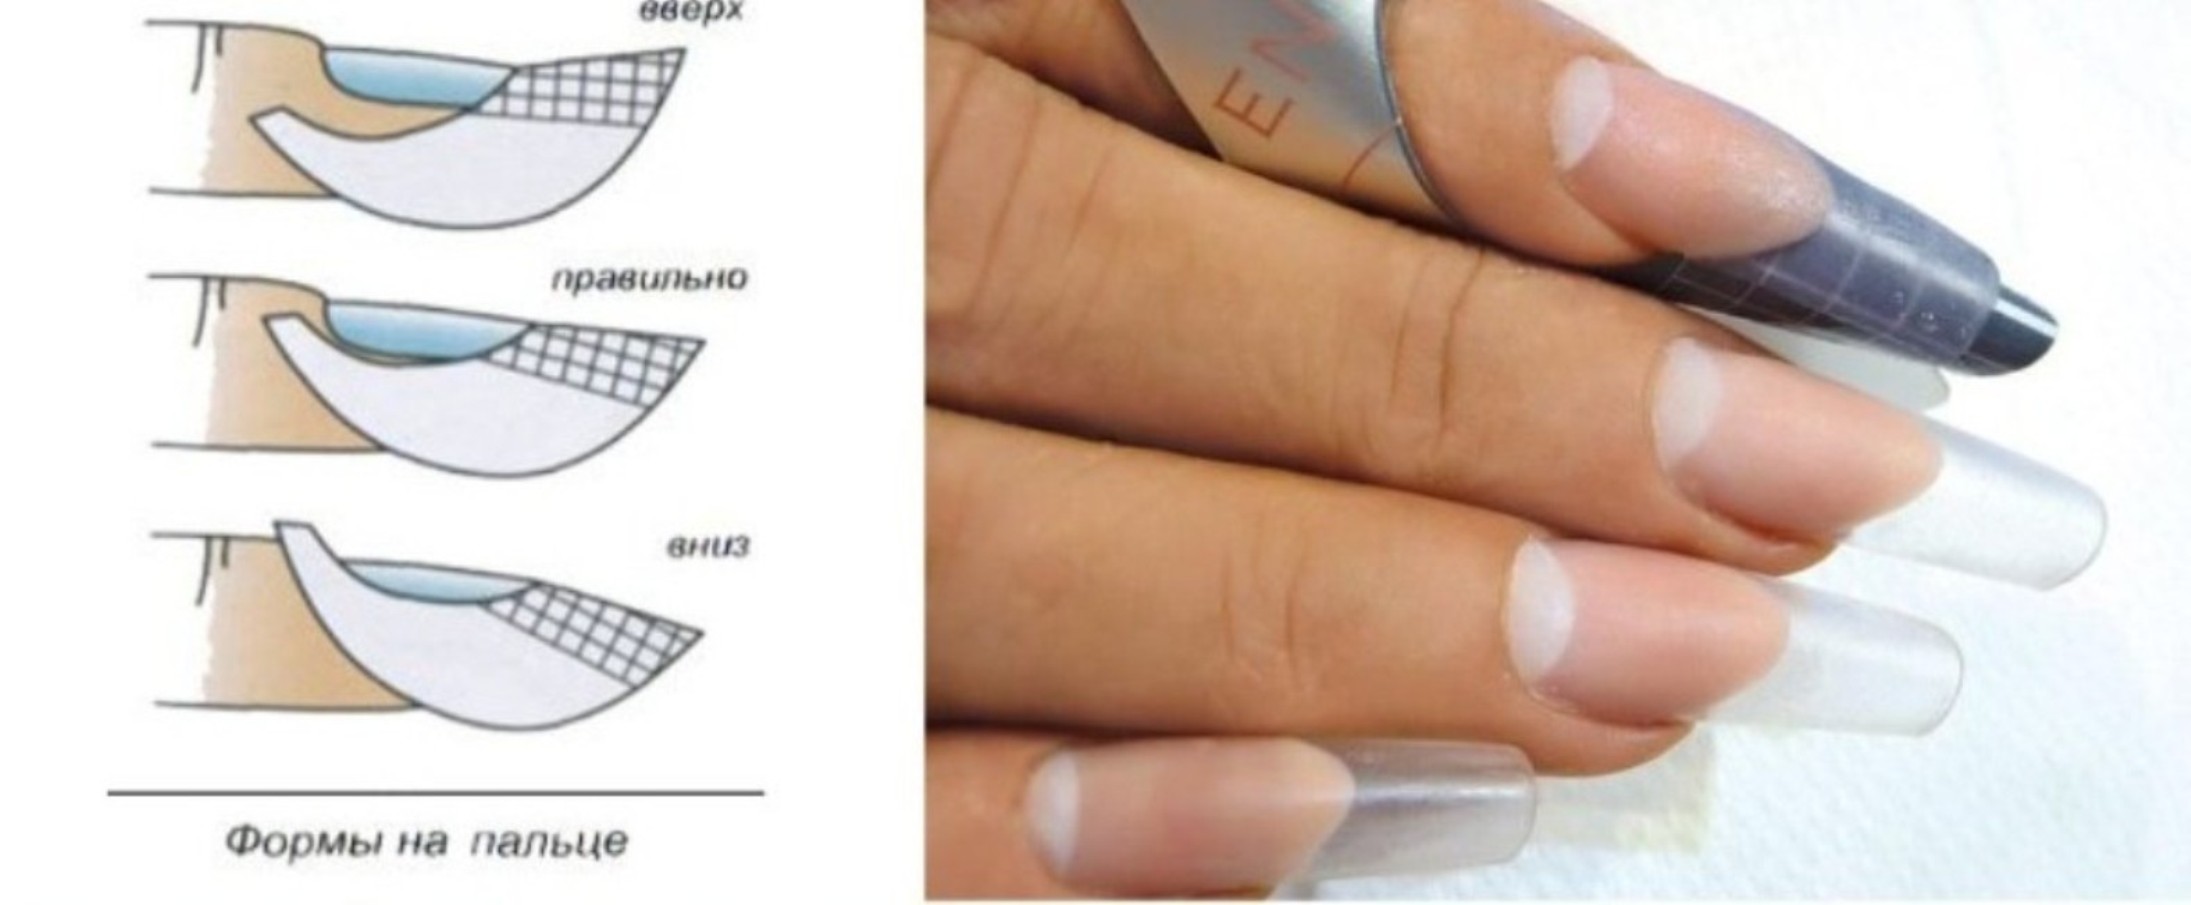 Правильная форма нарощенного ногтя миндаль сбоку